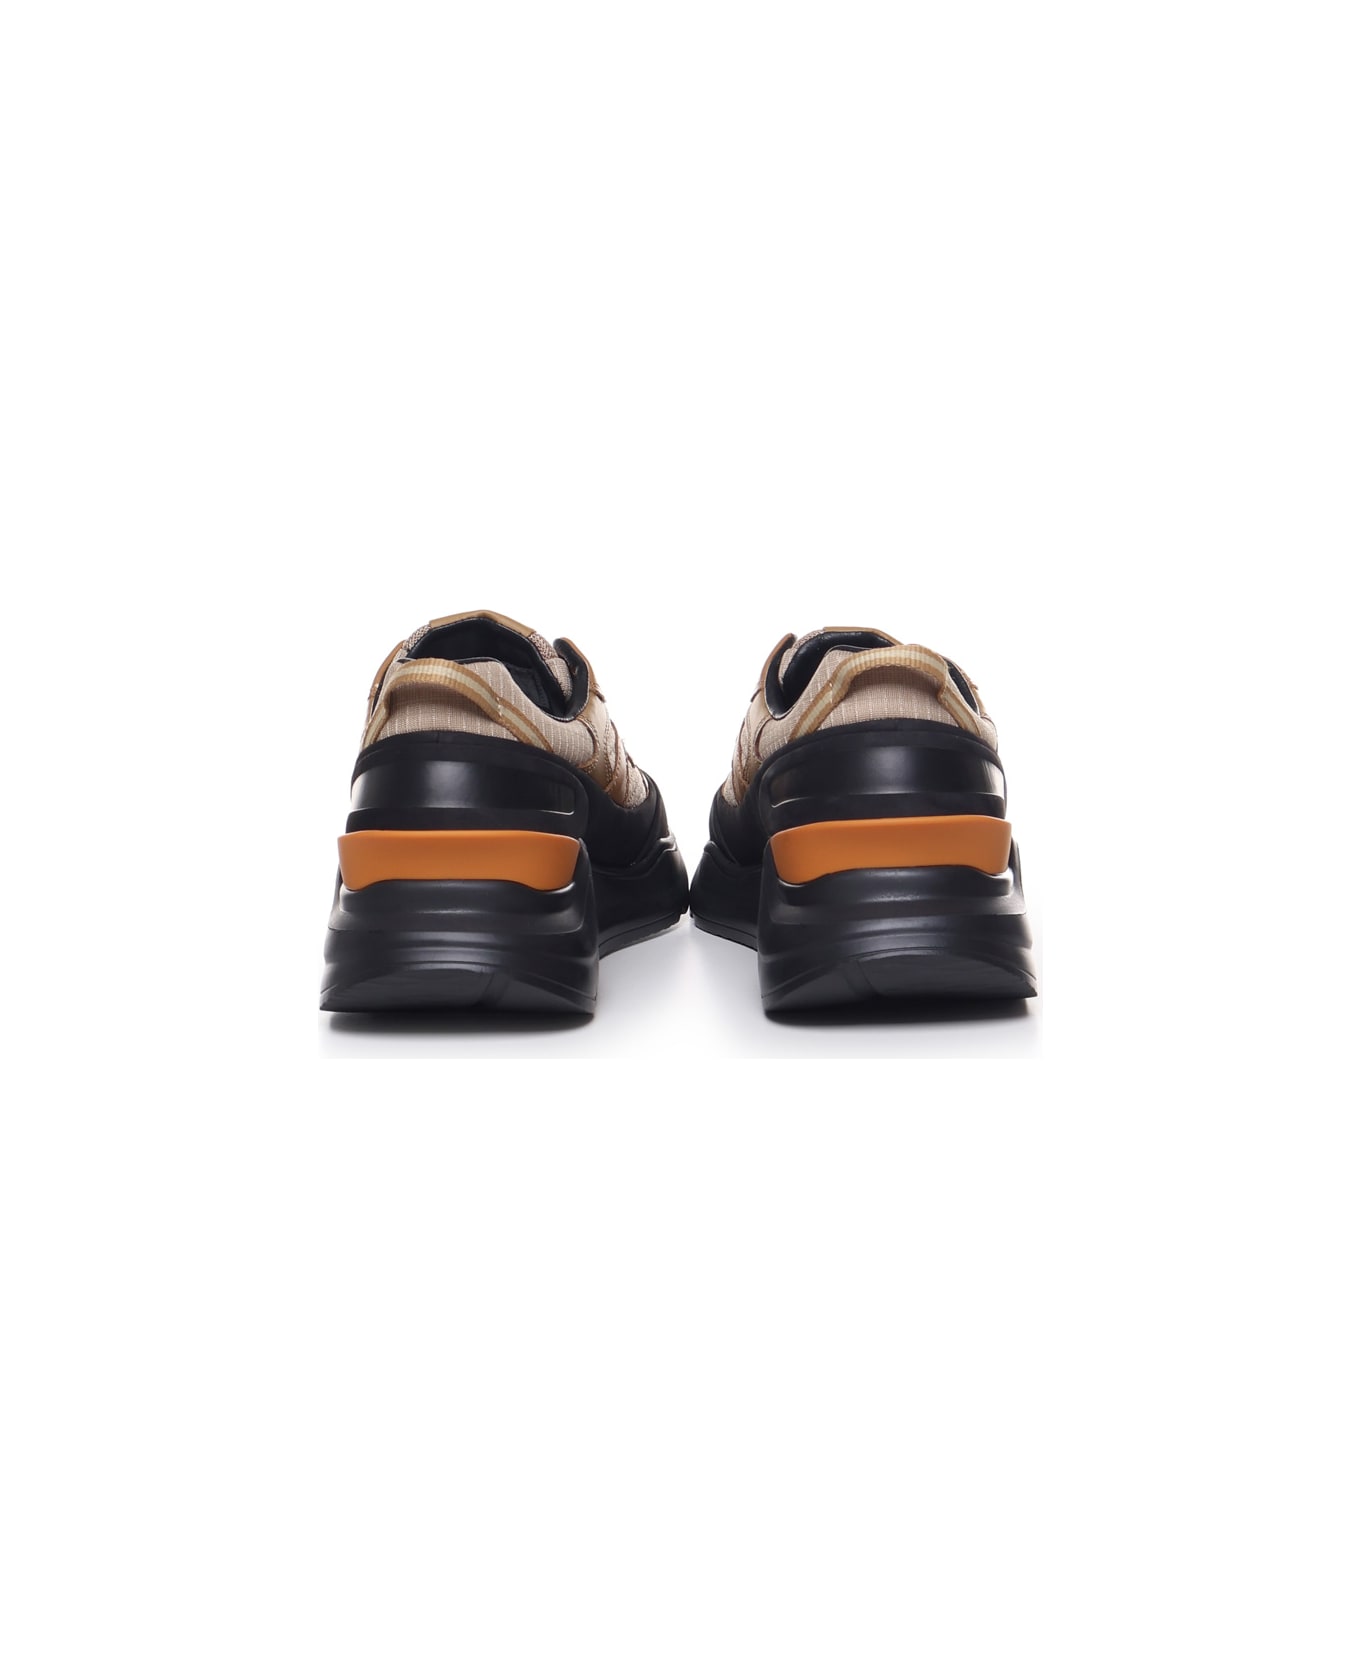 D.A.T.E. Fuga Method Sneakers - Beige-black スニーカー